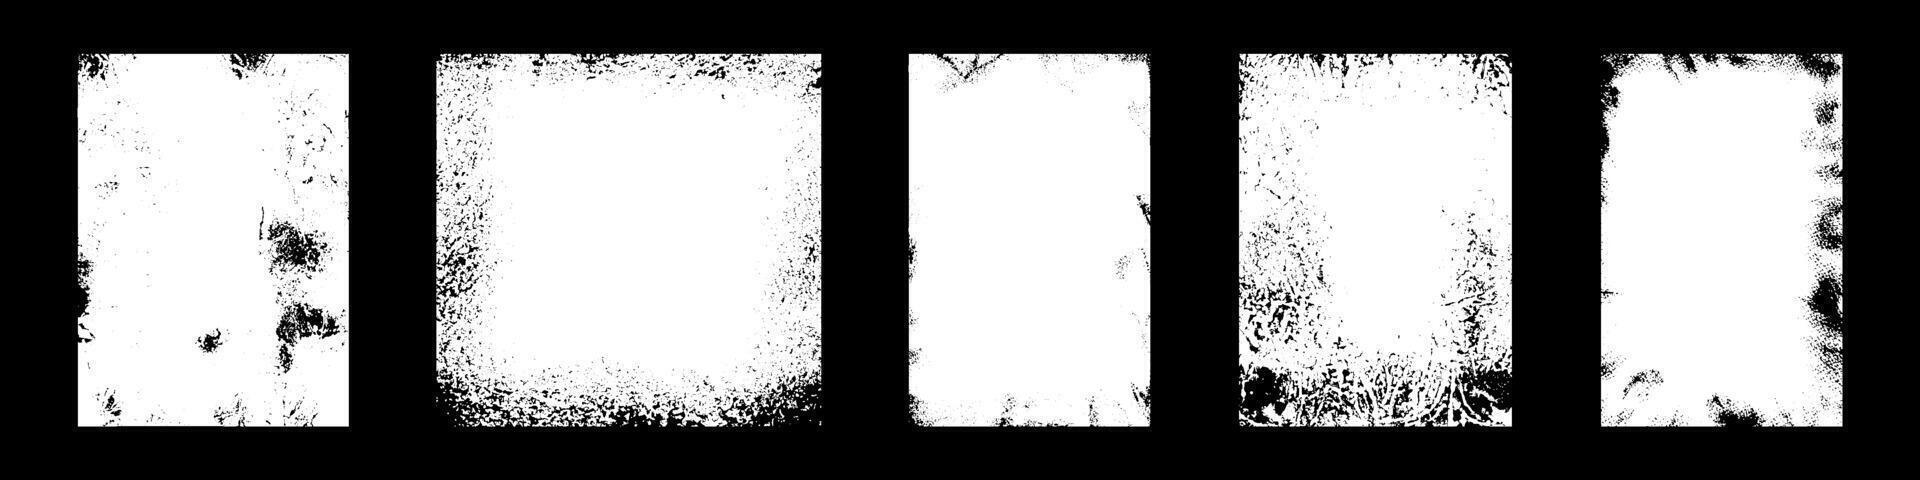 Clásico angustia cubrir con arañazos y grunge textura en negro y blanco. plano ilustración aislado vector